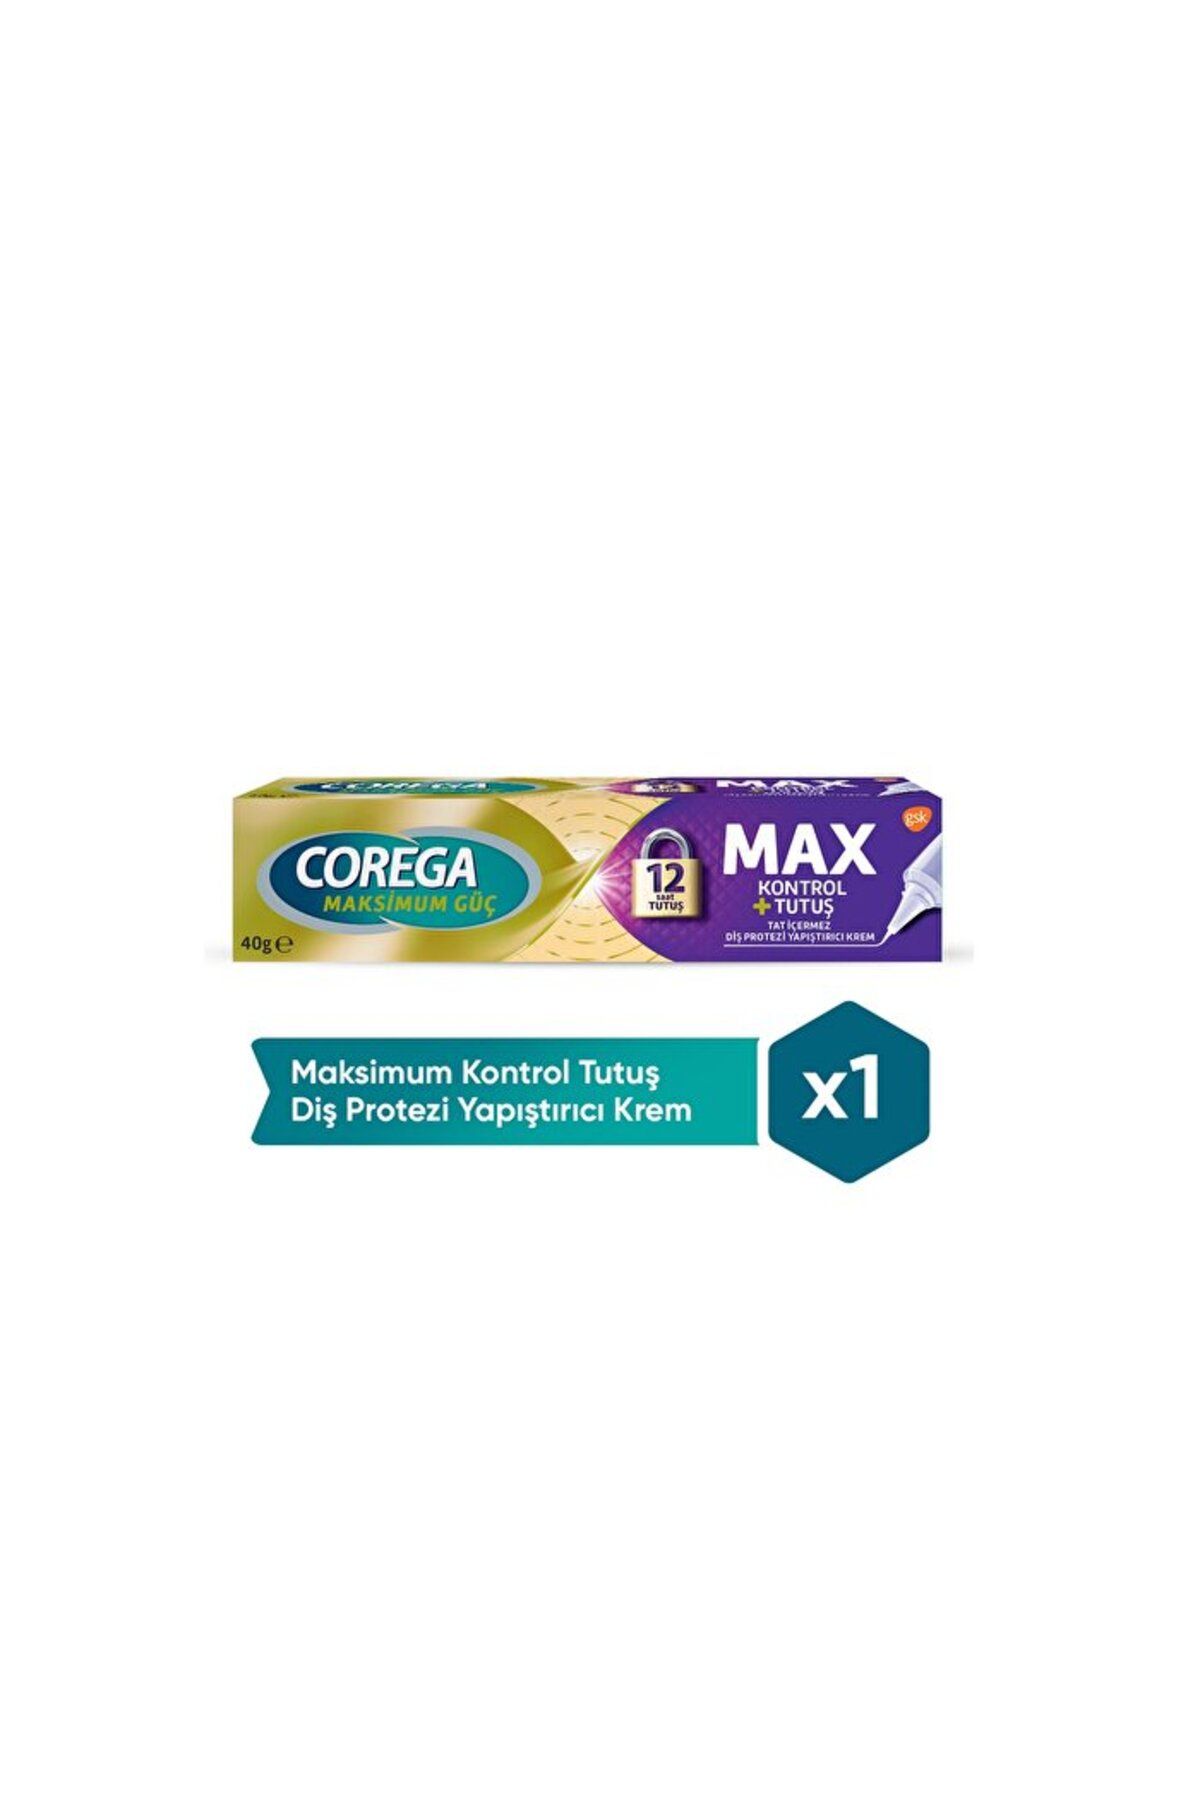 Corega Diş Protezi Yapıştırıcı Krem - Max Kontrol - 40 gr